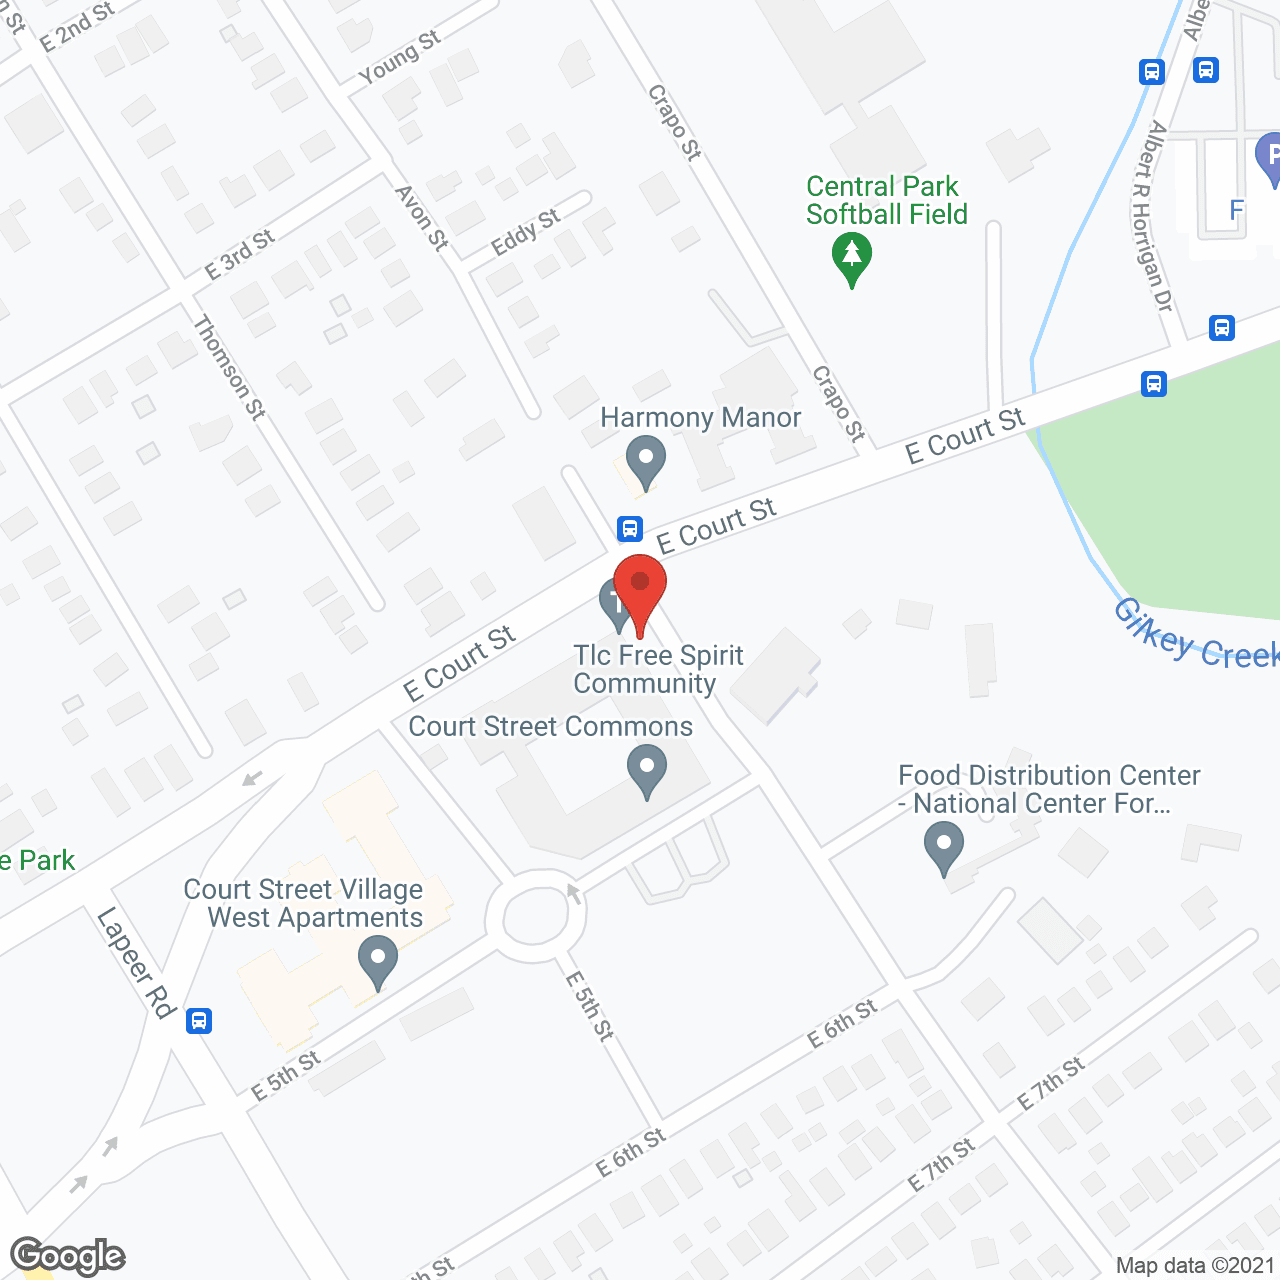 Court Street Village in google map